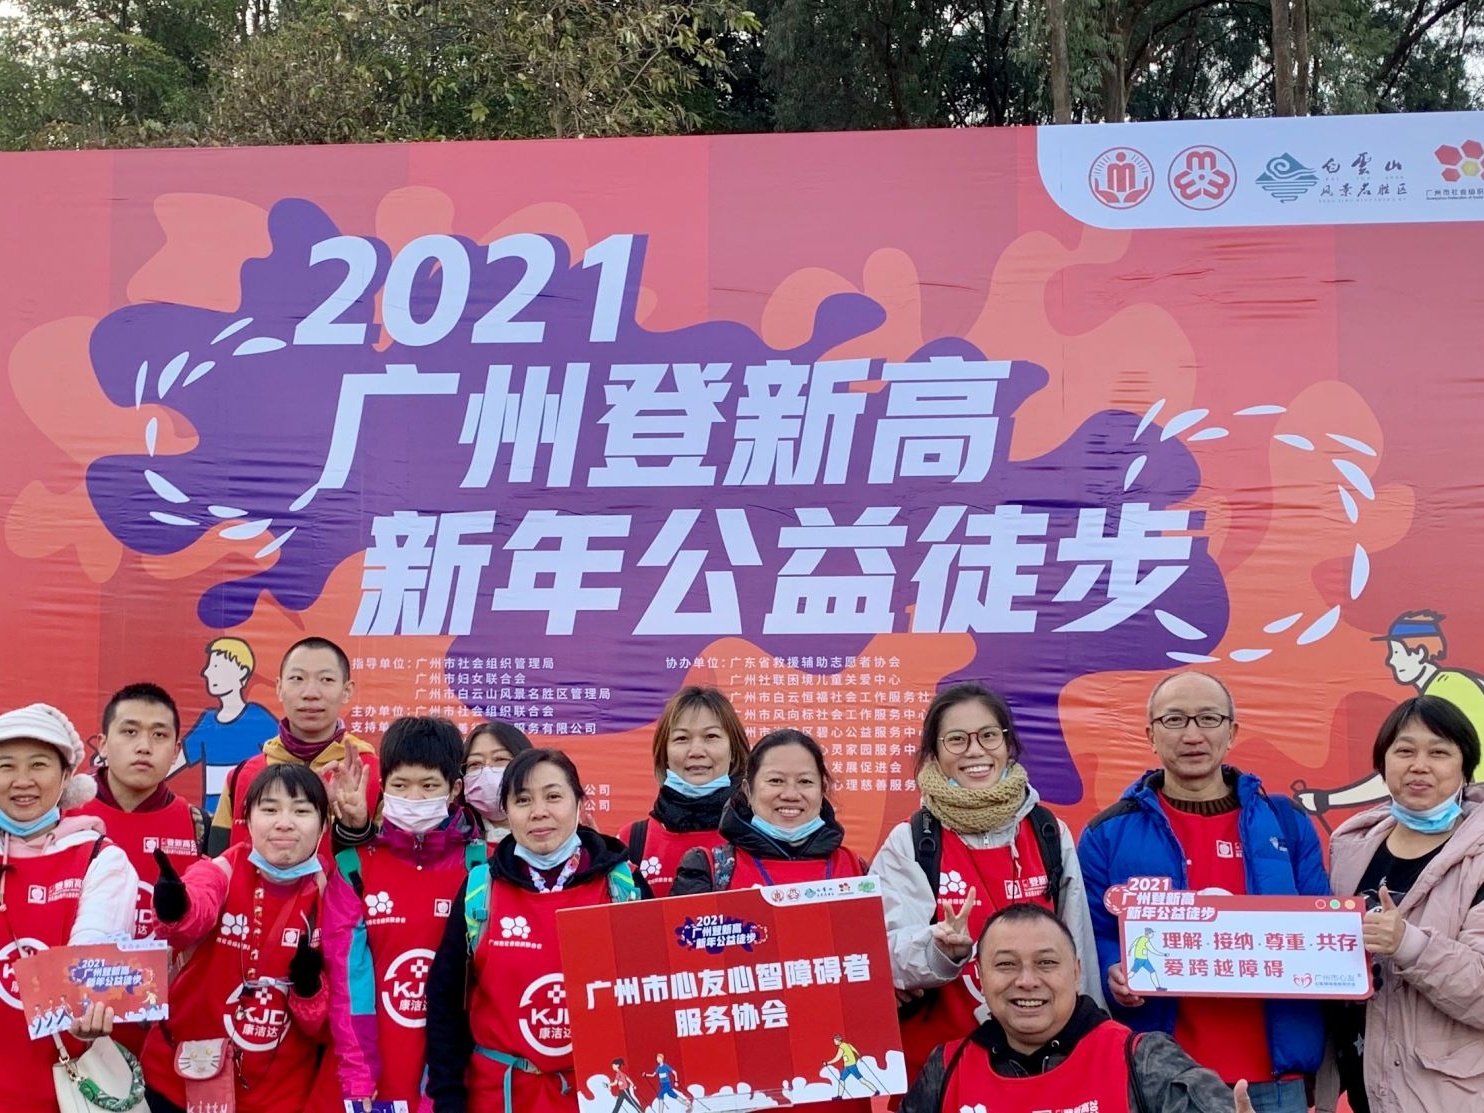 2021年广州第一场百人公益行长啥样？有爱、温暖、多元……